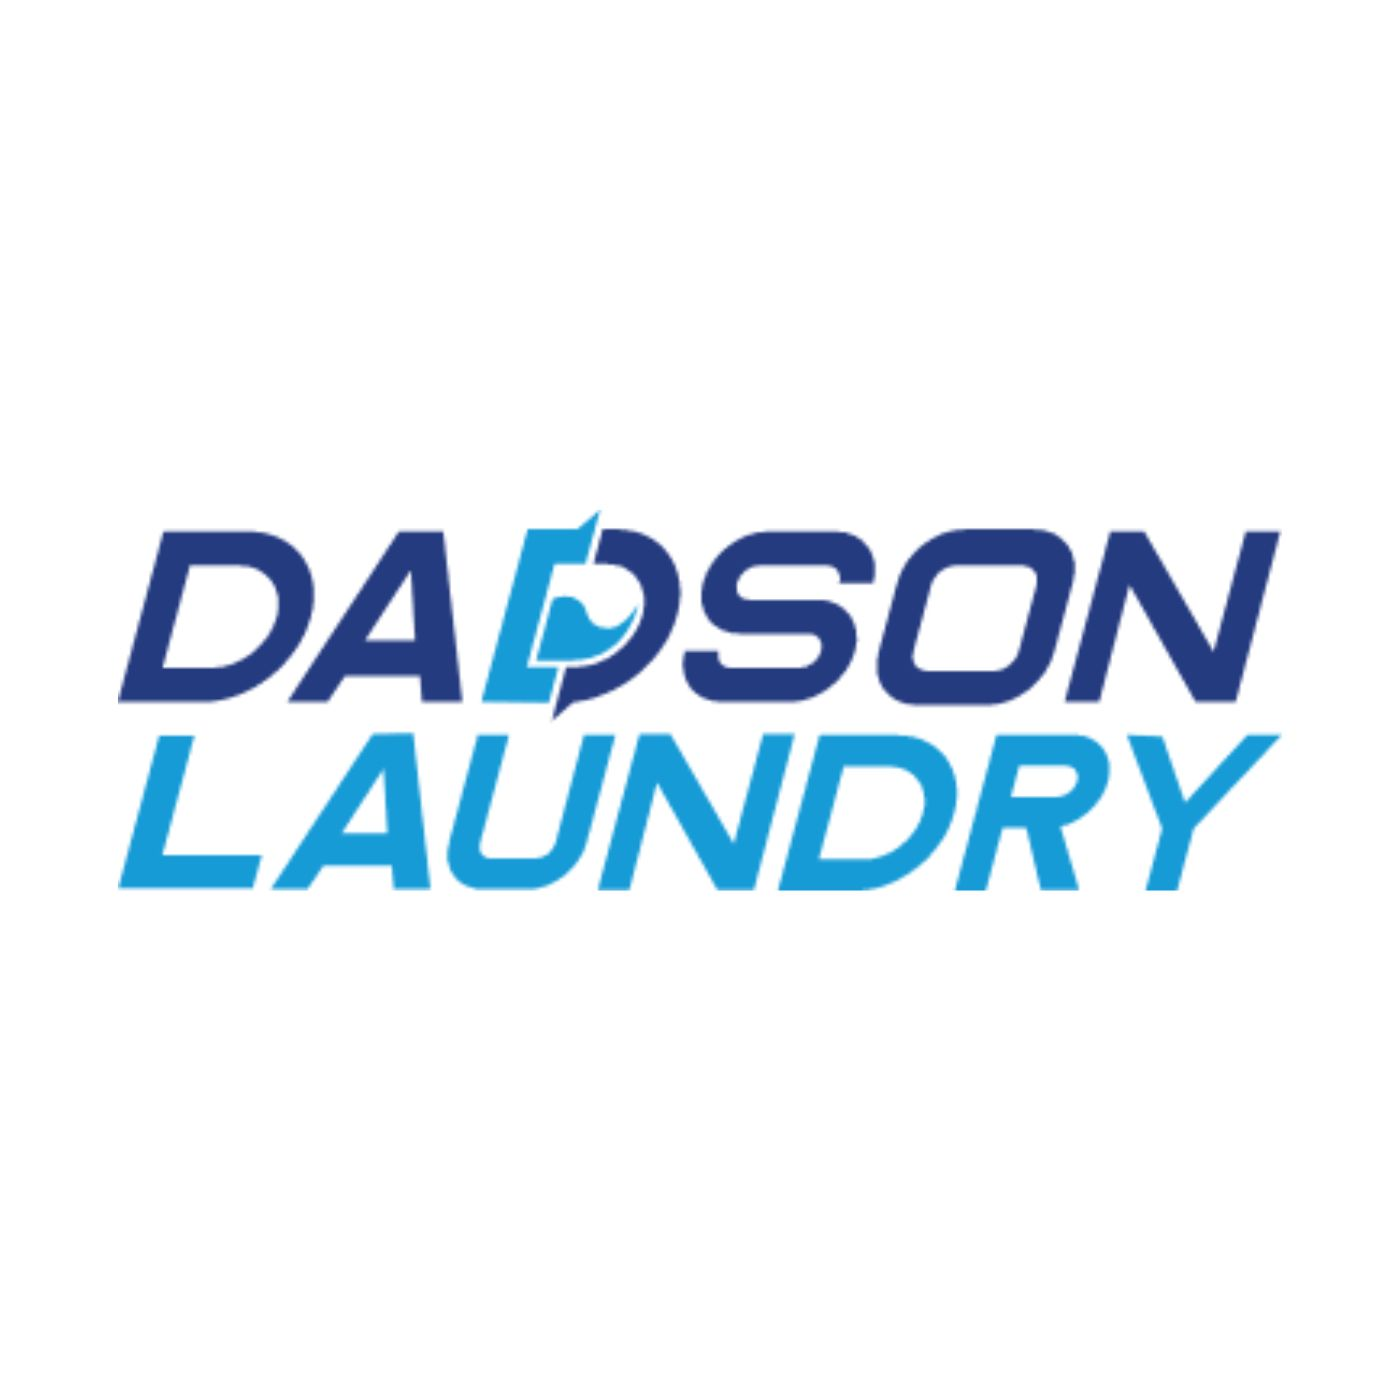 DADSON LAUNDRY, INC. Logo